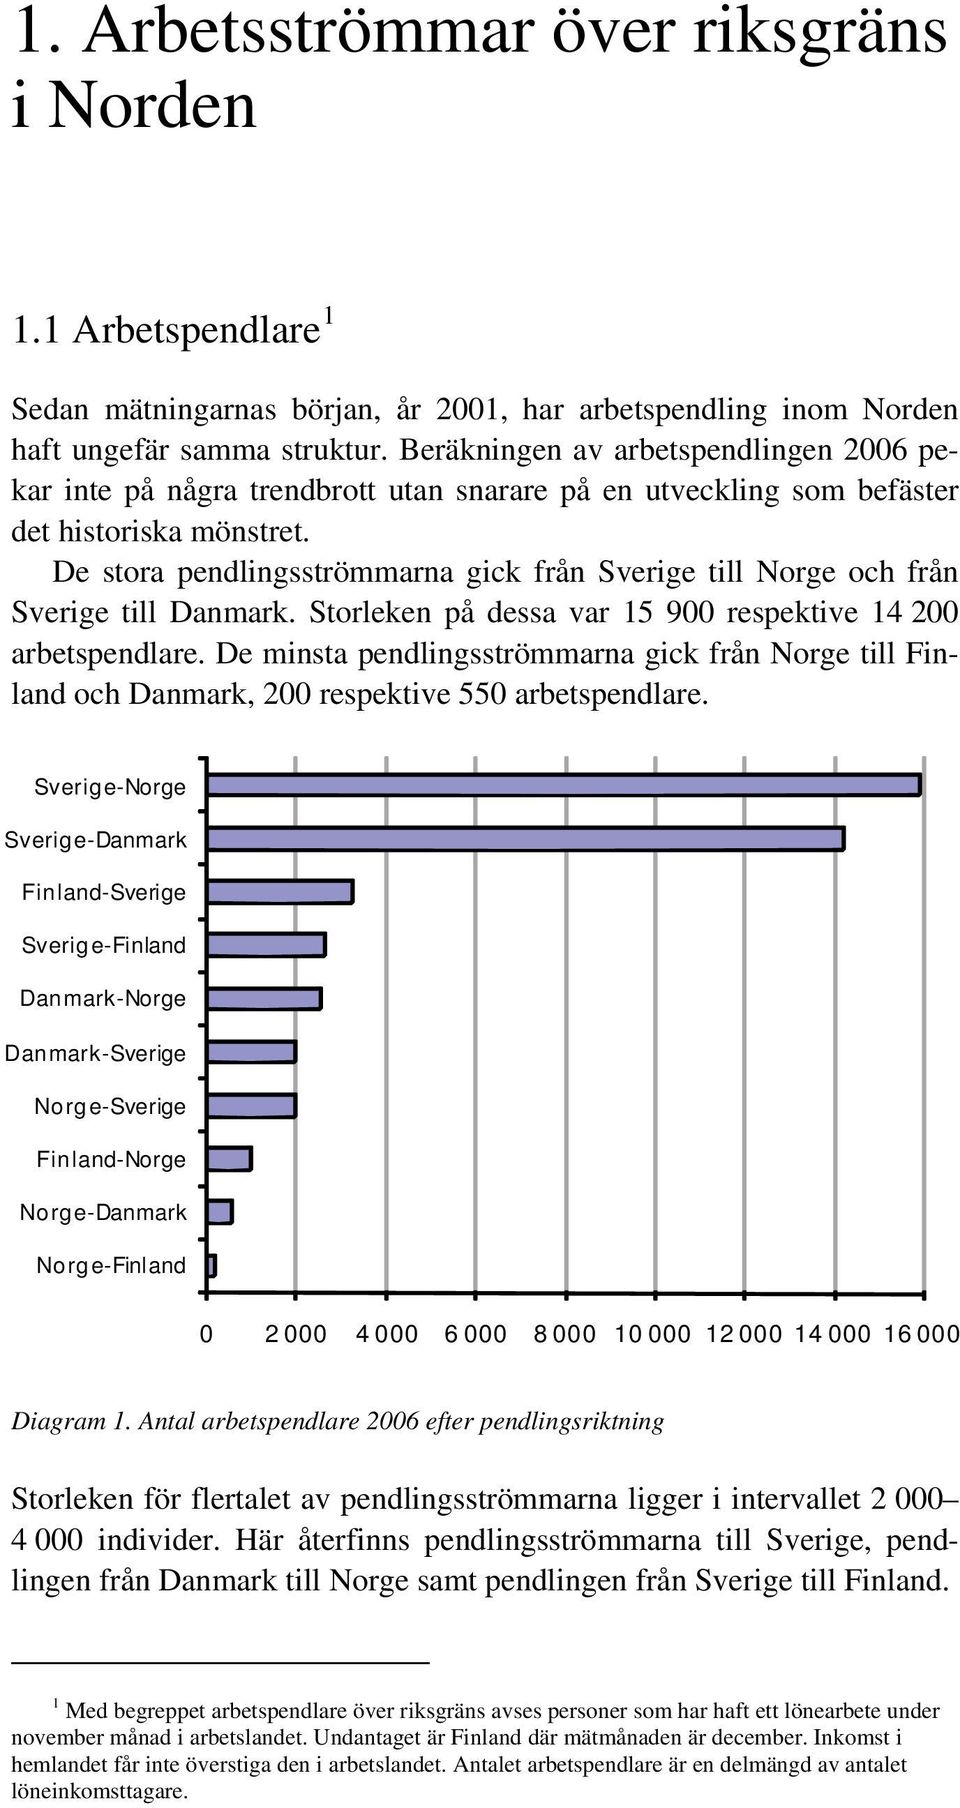 De stora pendlingsströmmarna gick från Sverige till Norge och från Sverige till Danmark. Storleken på dessa var 15 900 respektive 14 200 arbetspendlare.